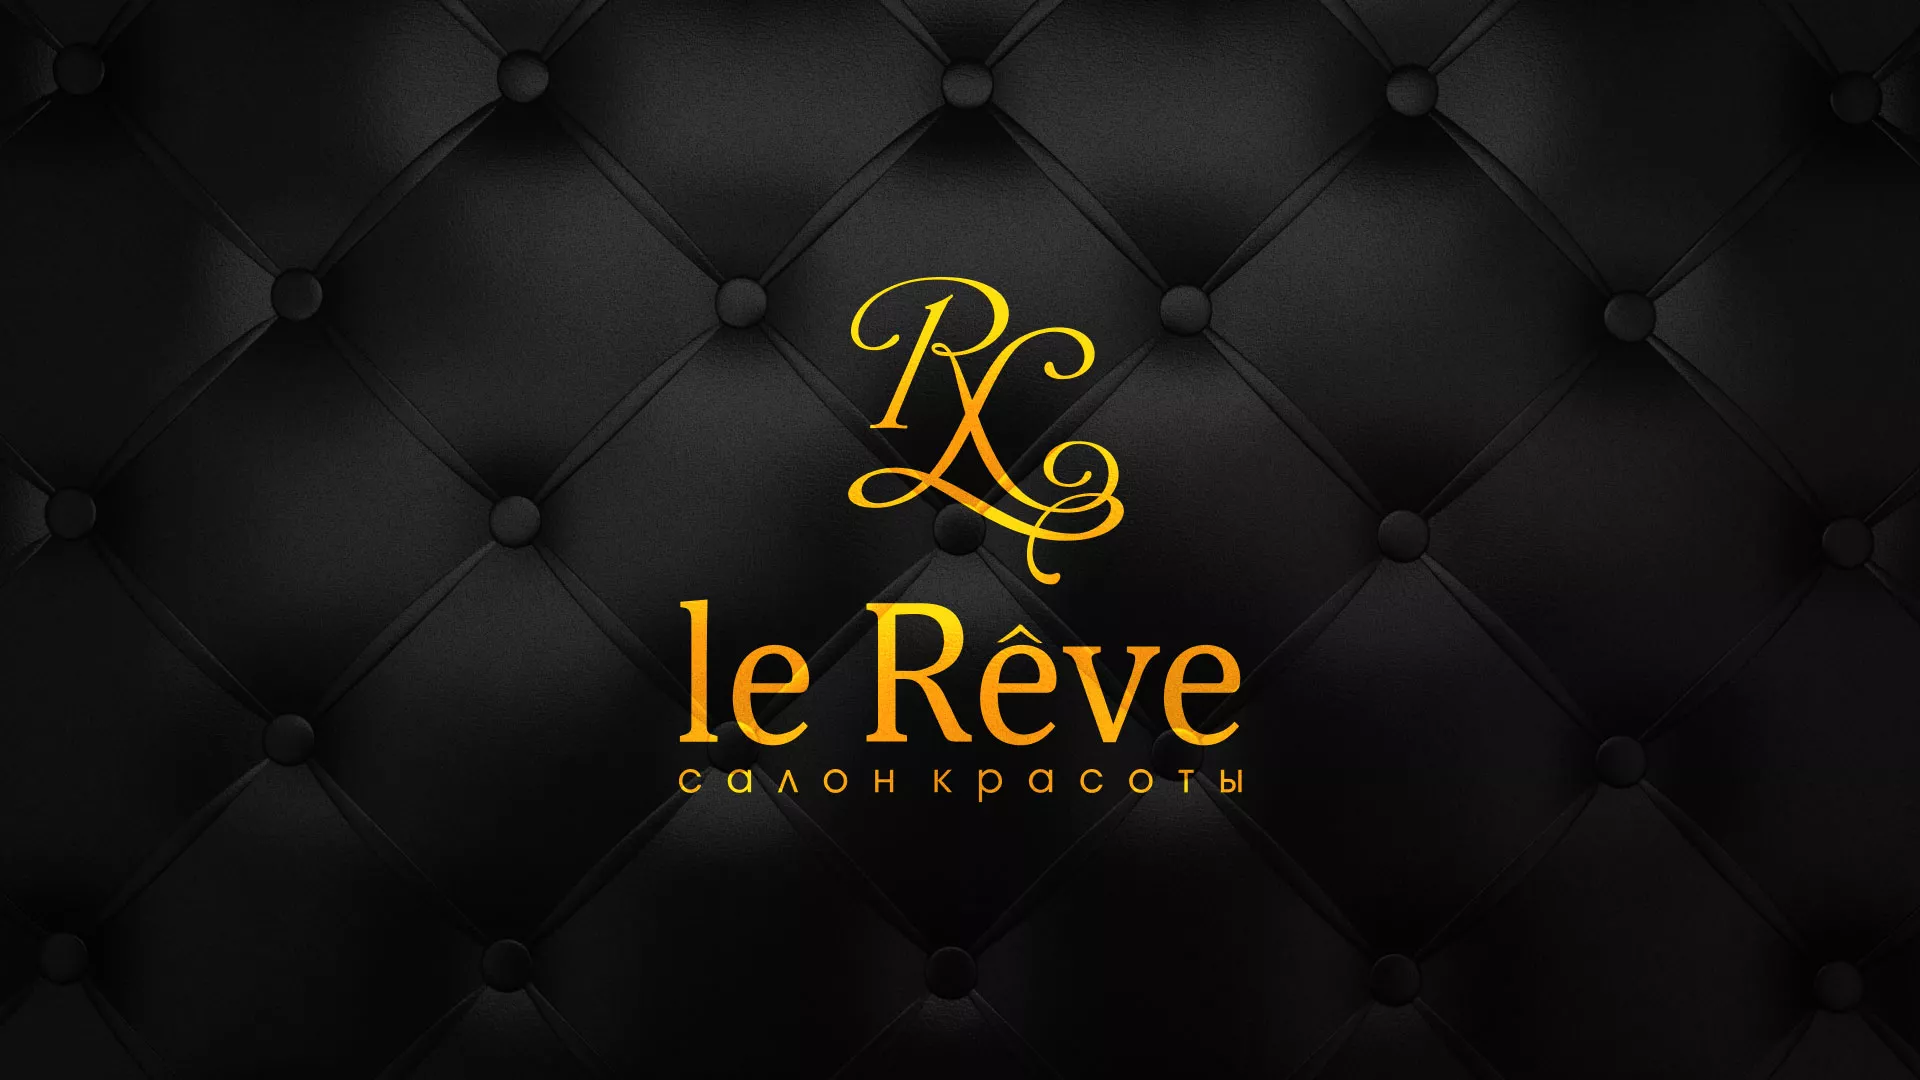 Разработка листовок для салона красоты «Le Reve» в Сургуте